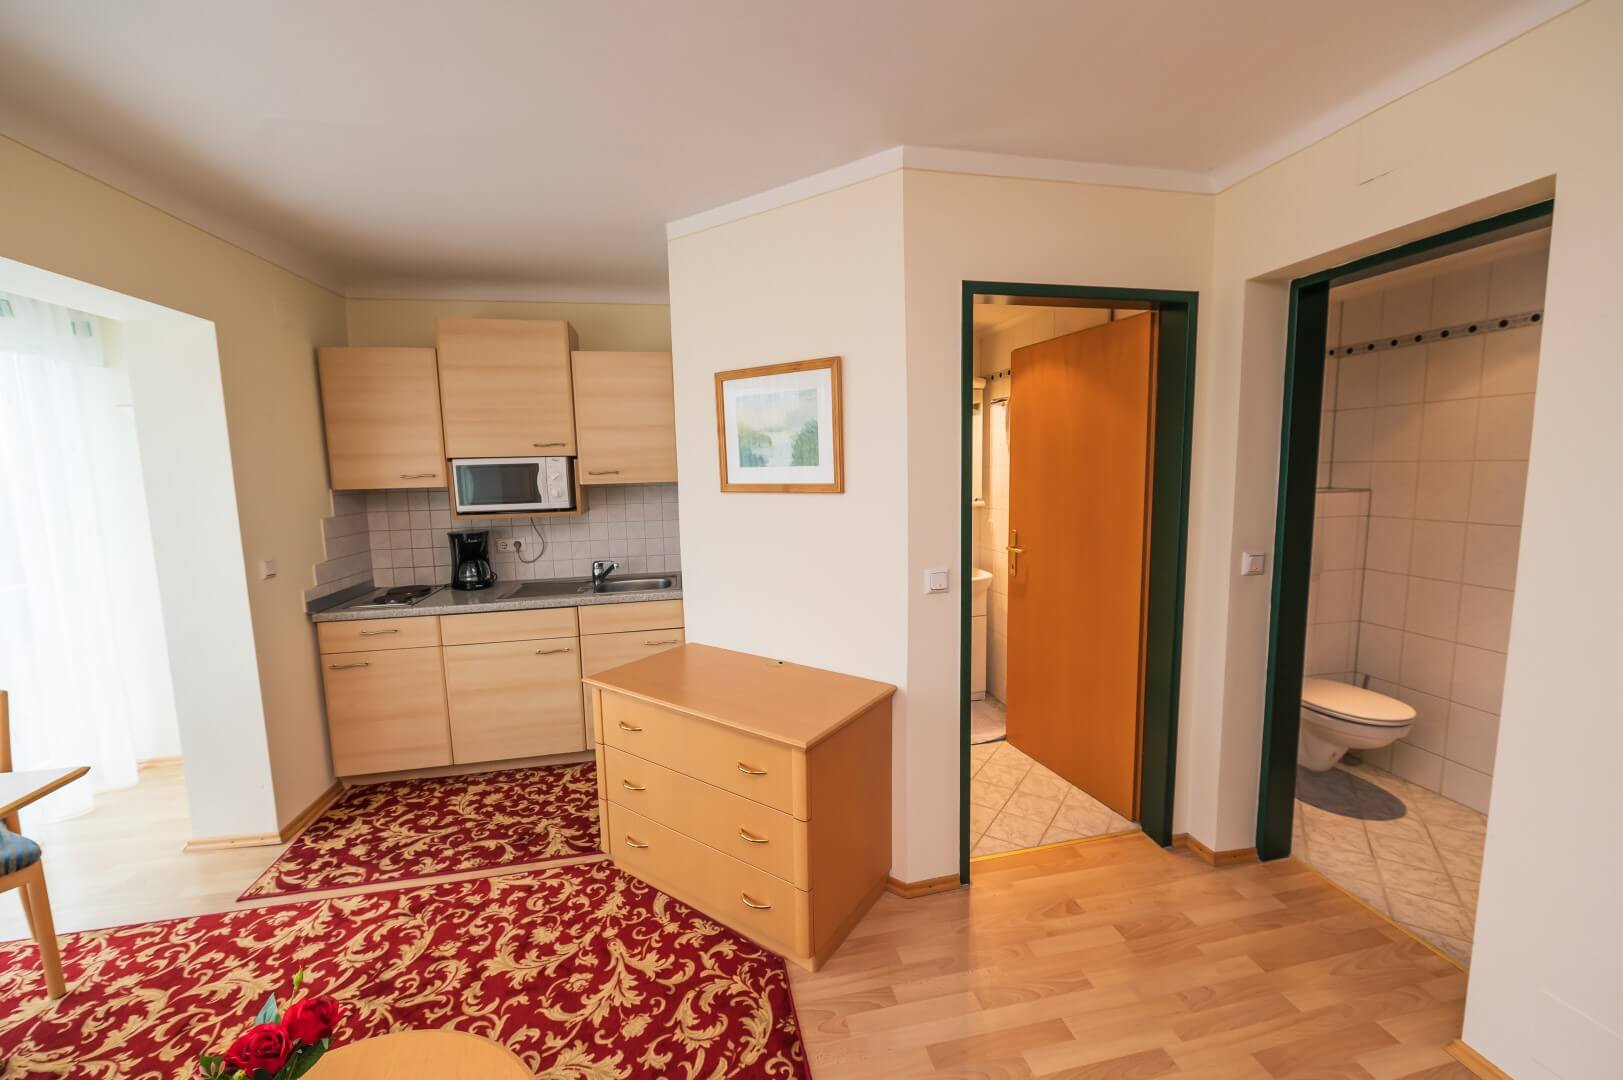 Wohnbereich eines Apartments mit komfortabler Sitzecke, Esstisch und angrenzender offener Küche im Gasthaus Treiber.